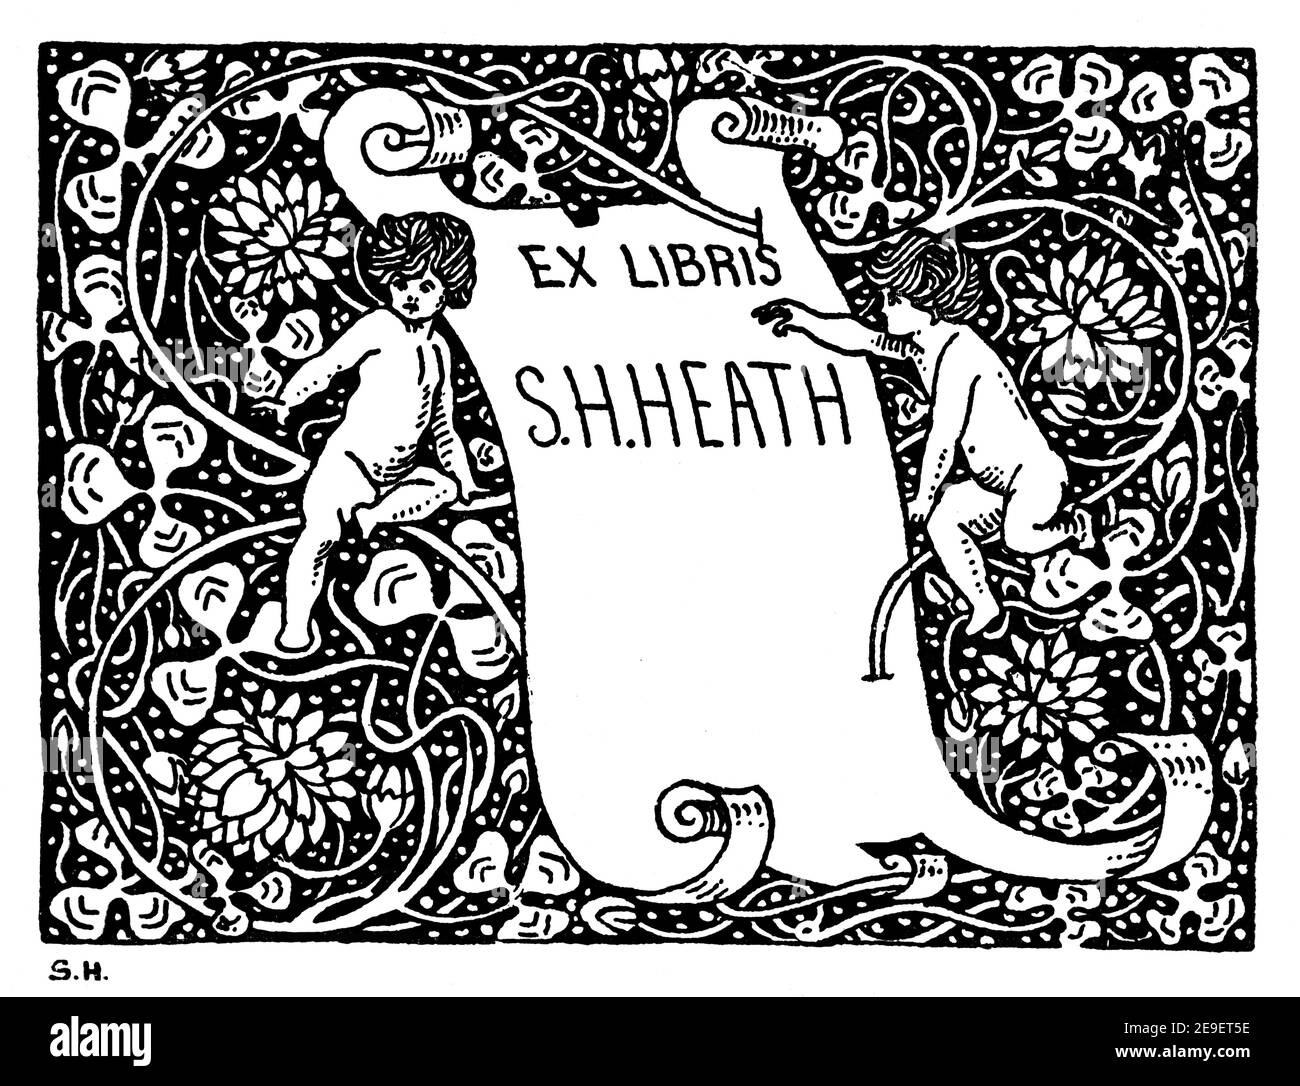 Persönliches Exlibris-Design für S H Heath von Sidney Herbert Heath, 1893 Band 1 des Studio an Illustrated Magazine of Fine and Applied Art Stockfoto